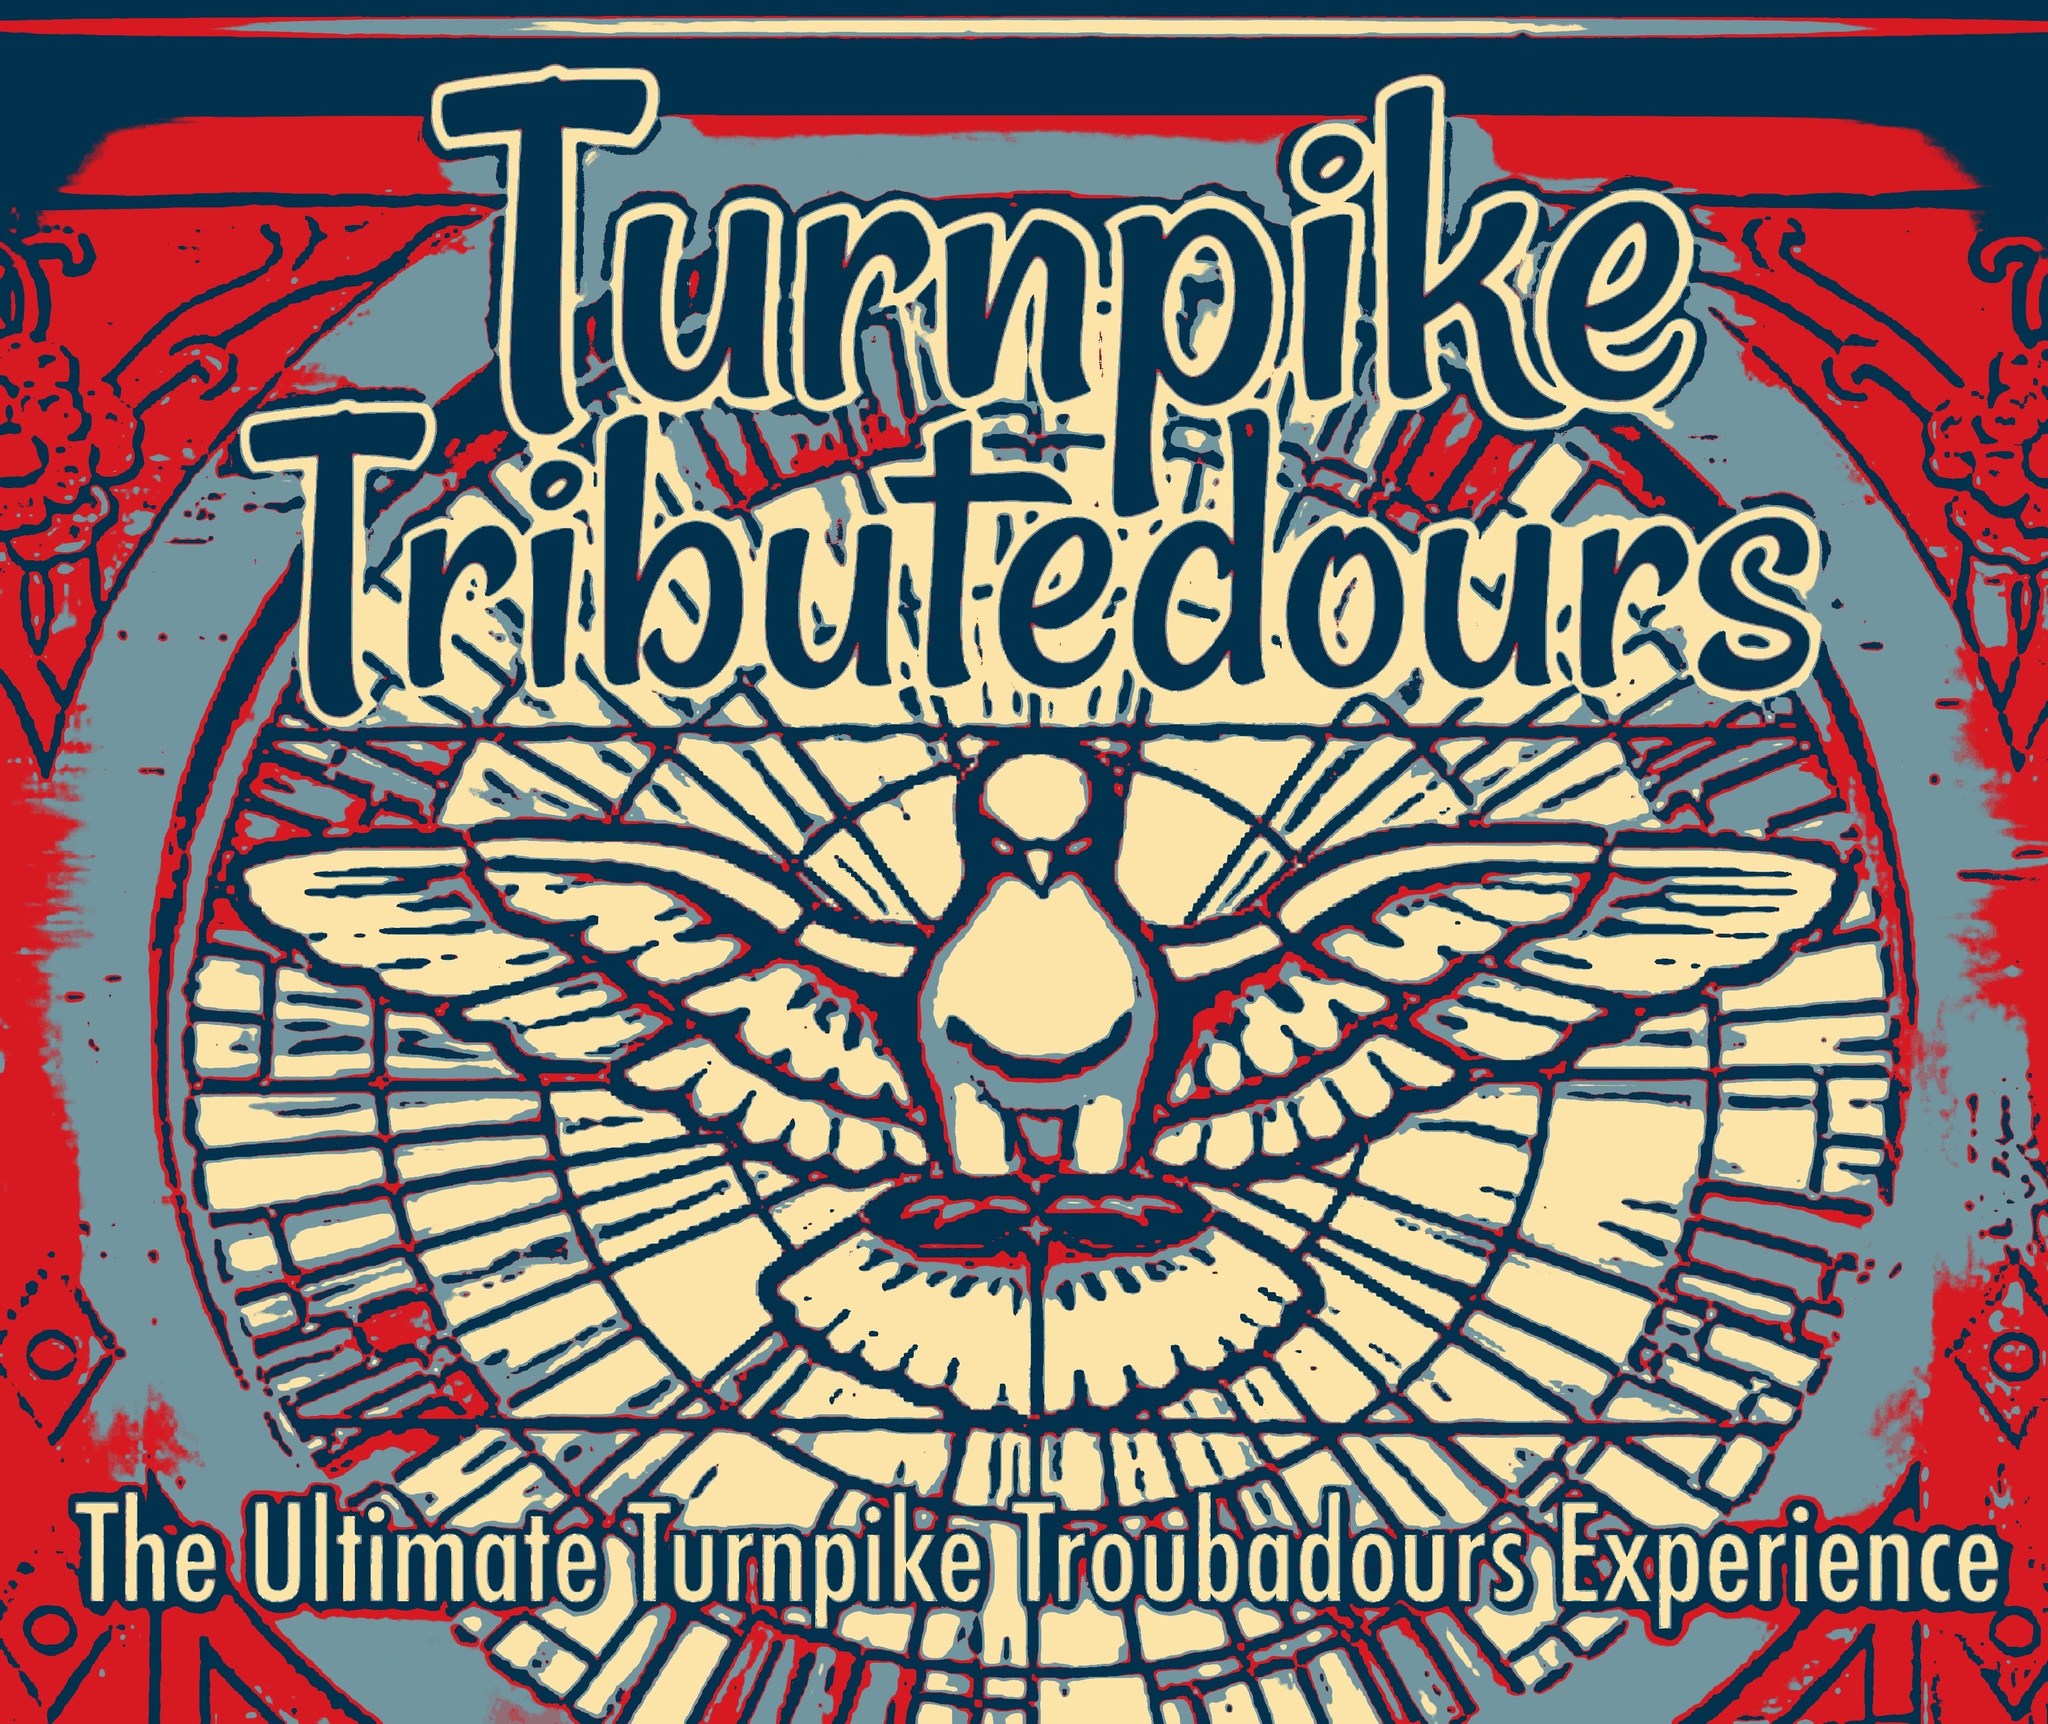 Turnpike Troubadours Experience FB Image